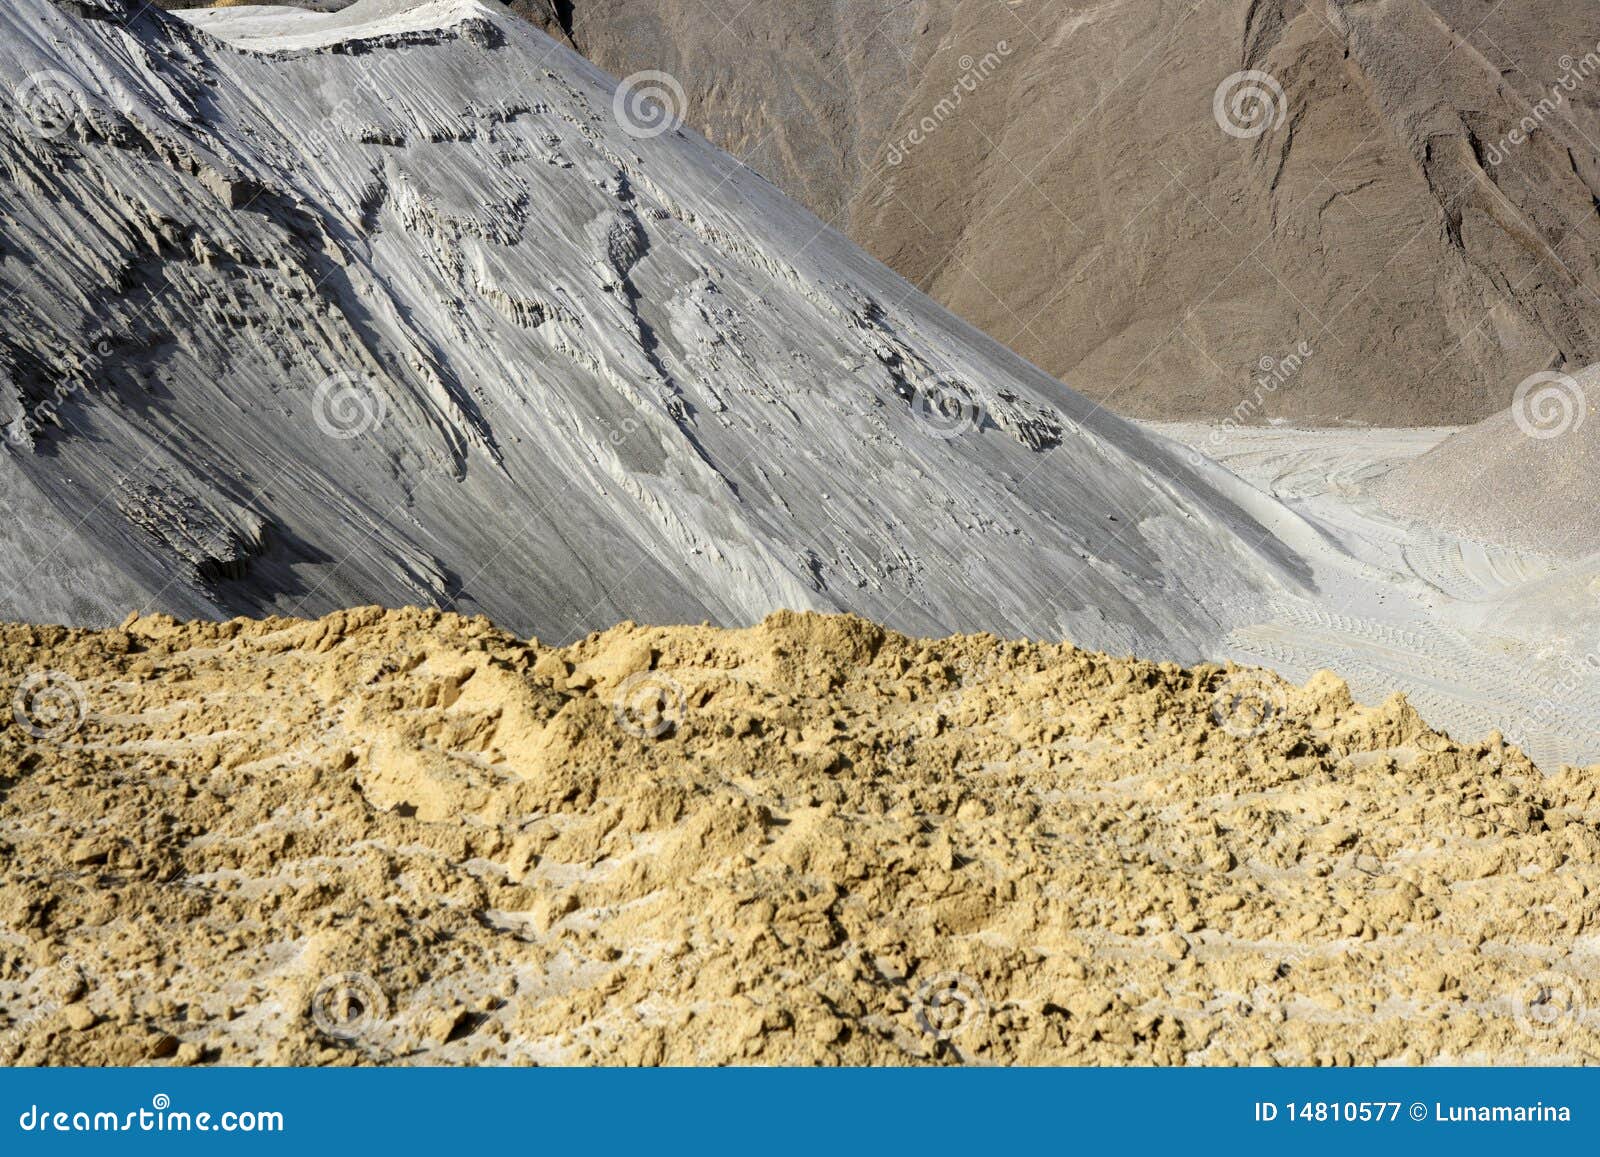 sand quarry mounds of varied sands color